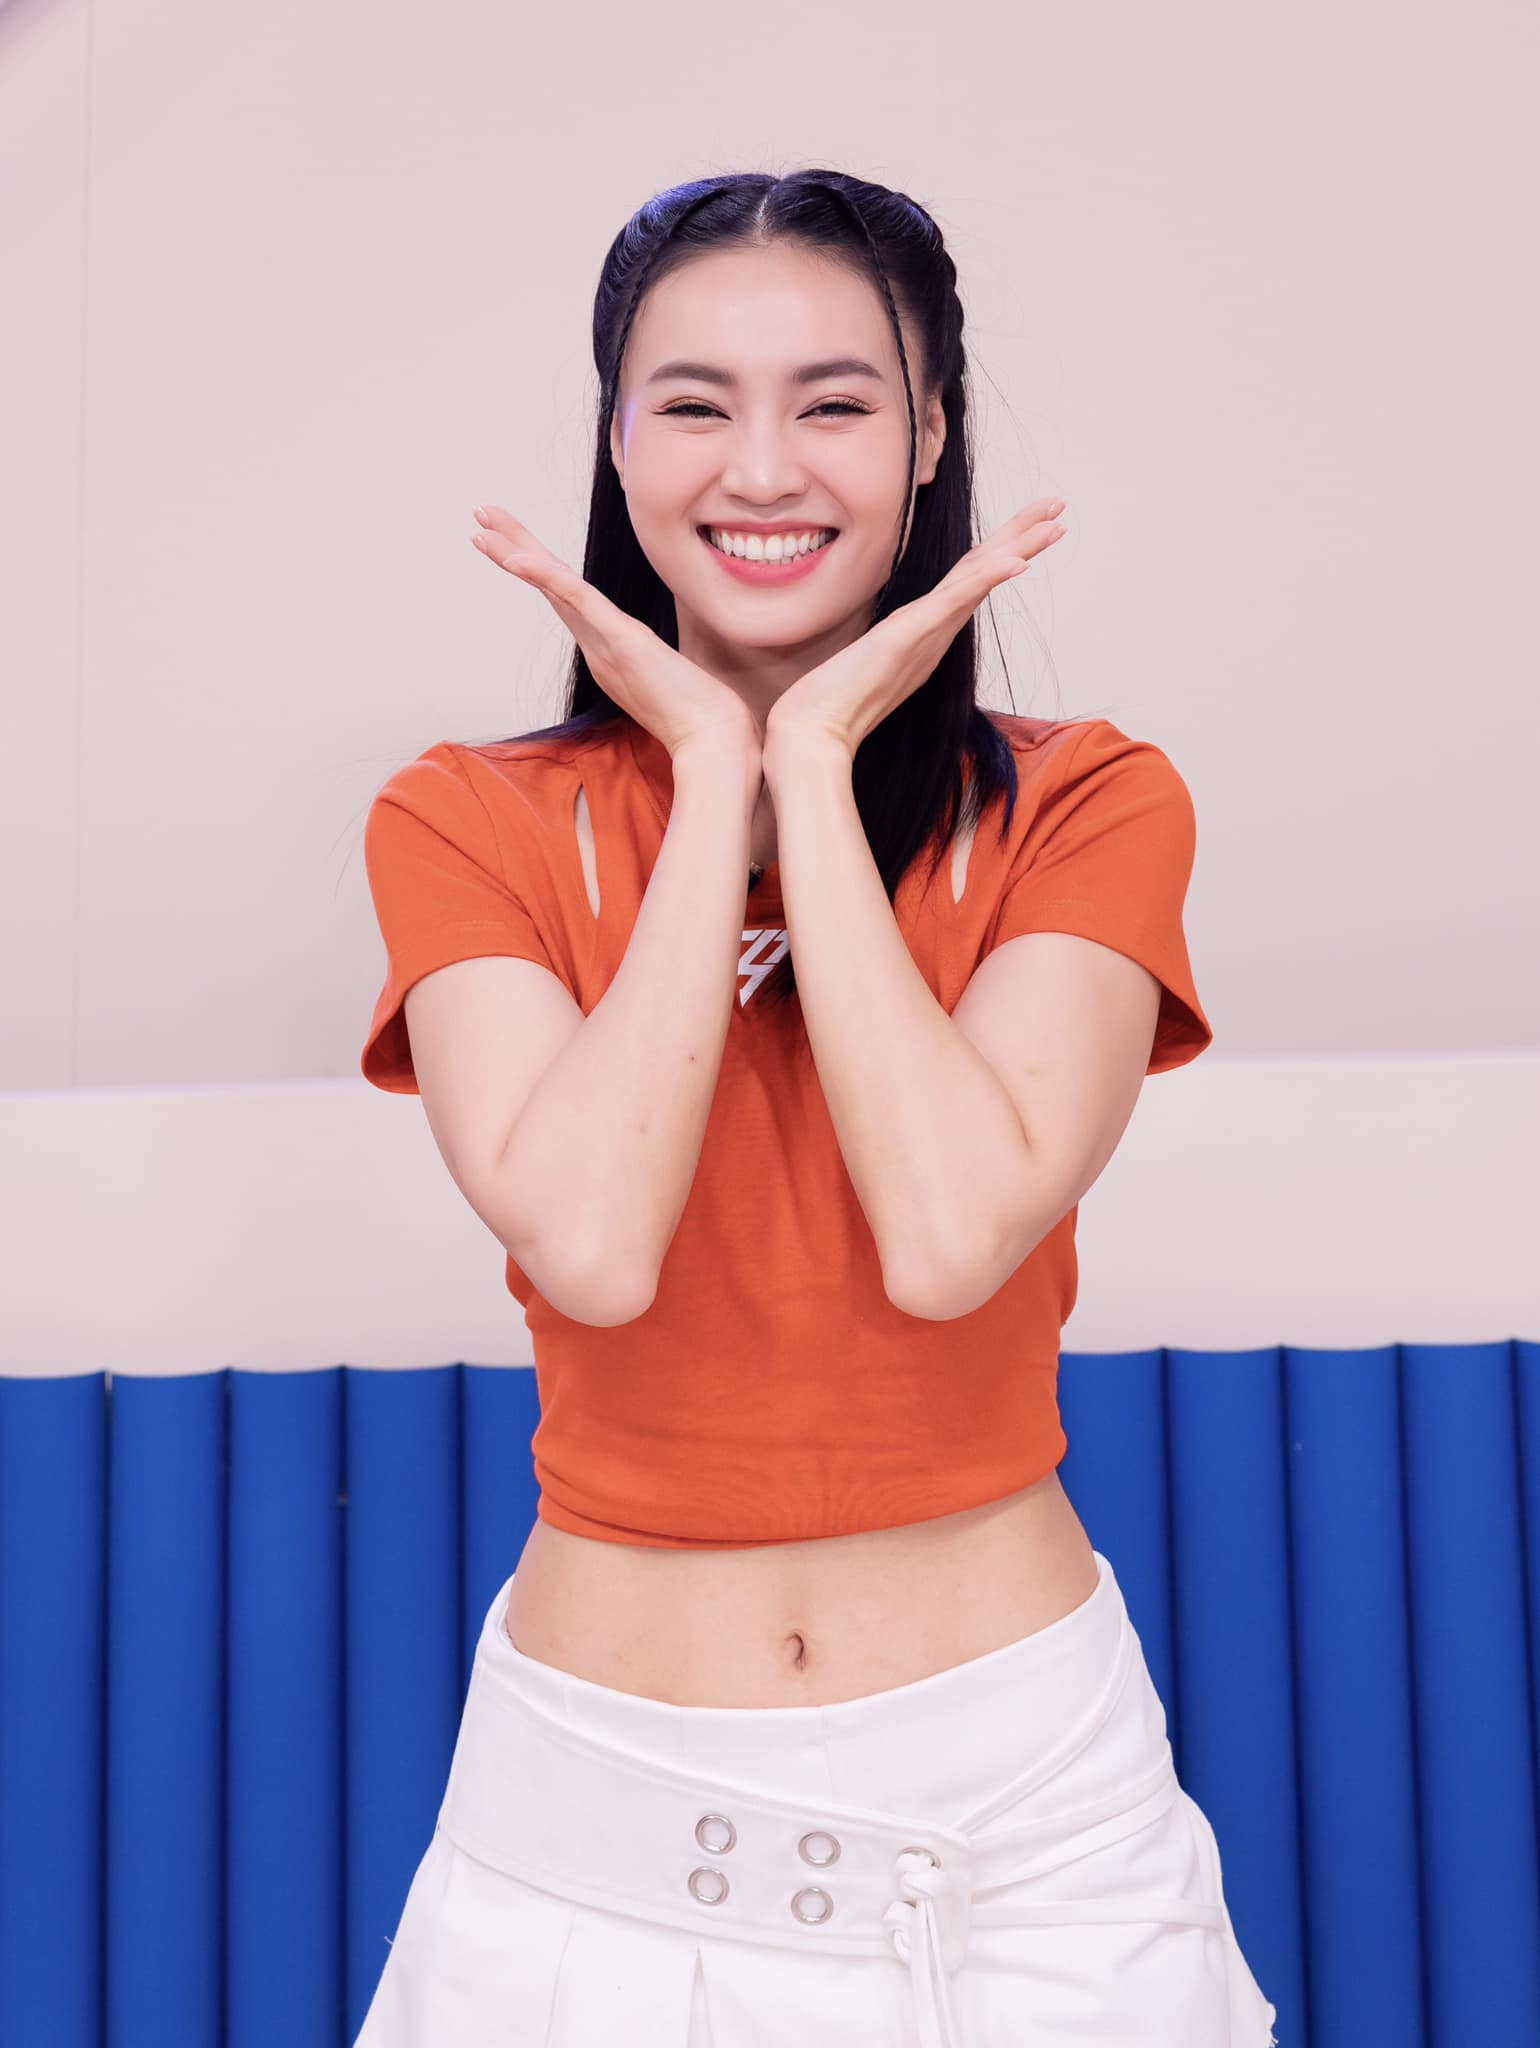 Ninh Dương Lan Ngọc dẫn đầu bình chọn trong show Chị đẹp. Ảnh: Facebook nhân vật.